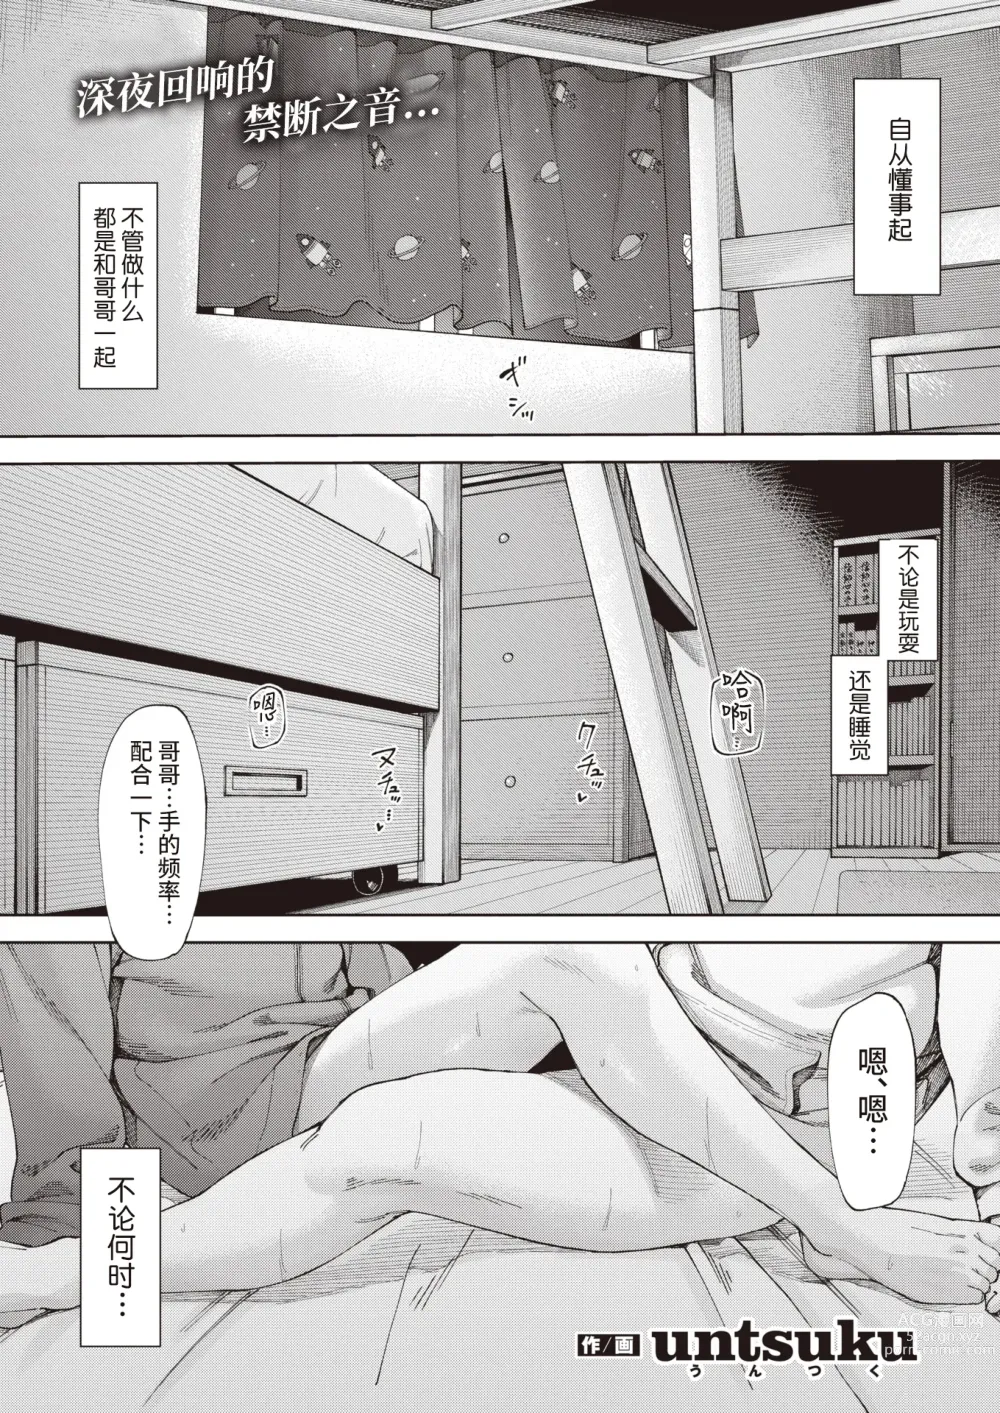 Page 1 of manga 鳥籠#1